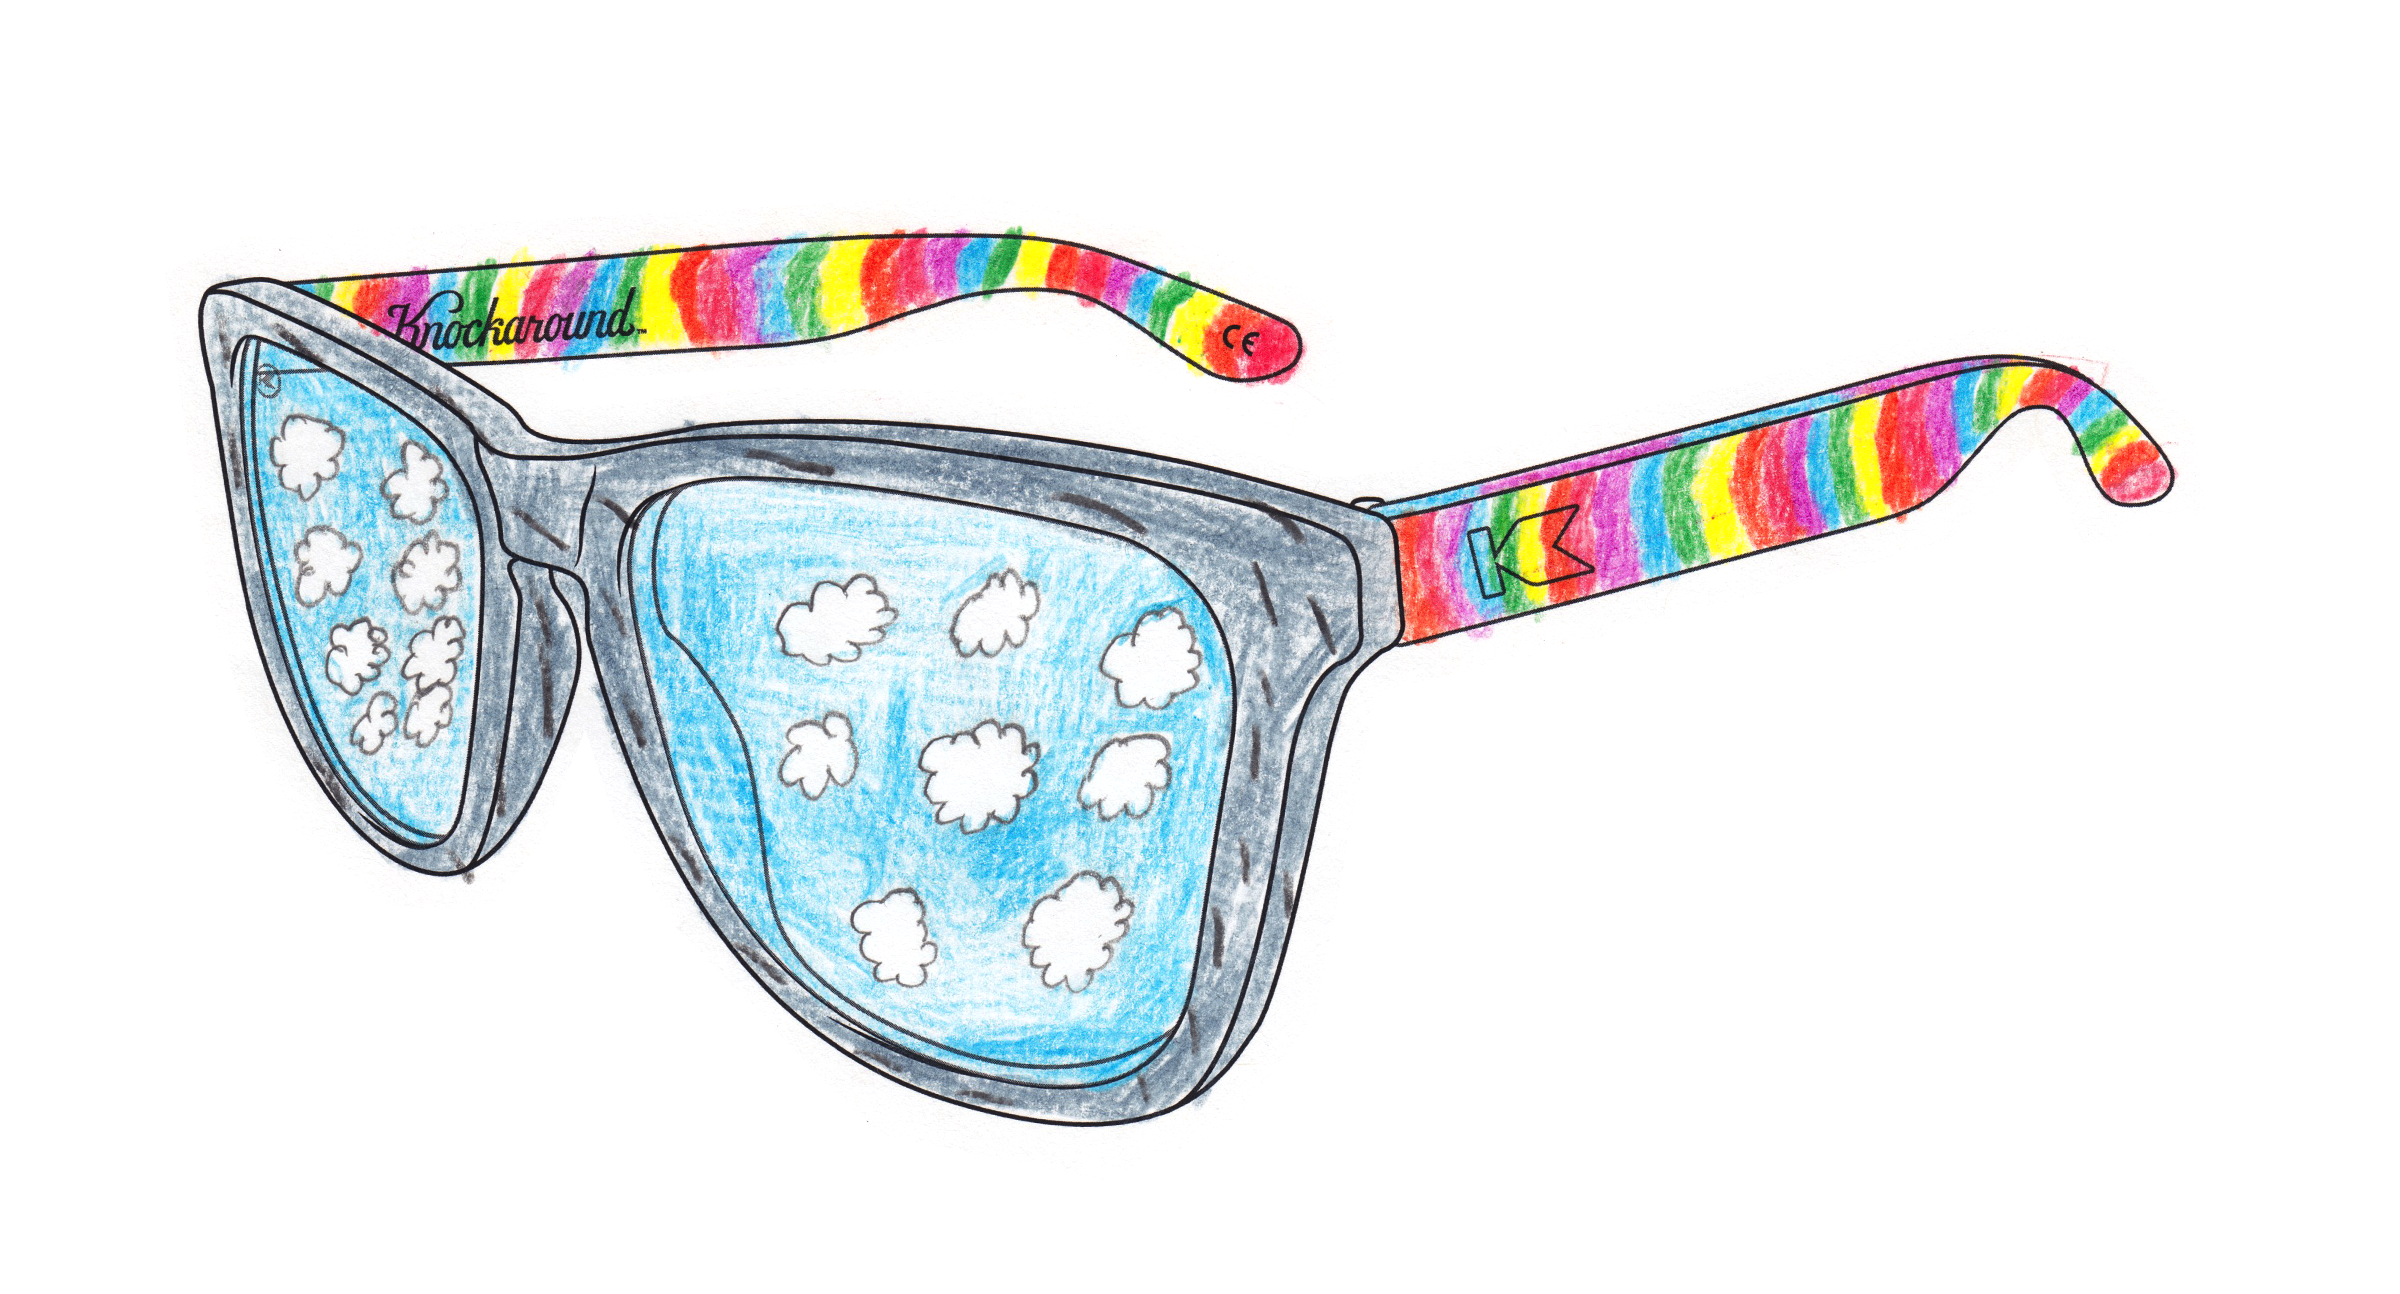 5th grader Jayden's original Knockaround sunglasses design idea.